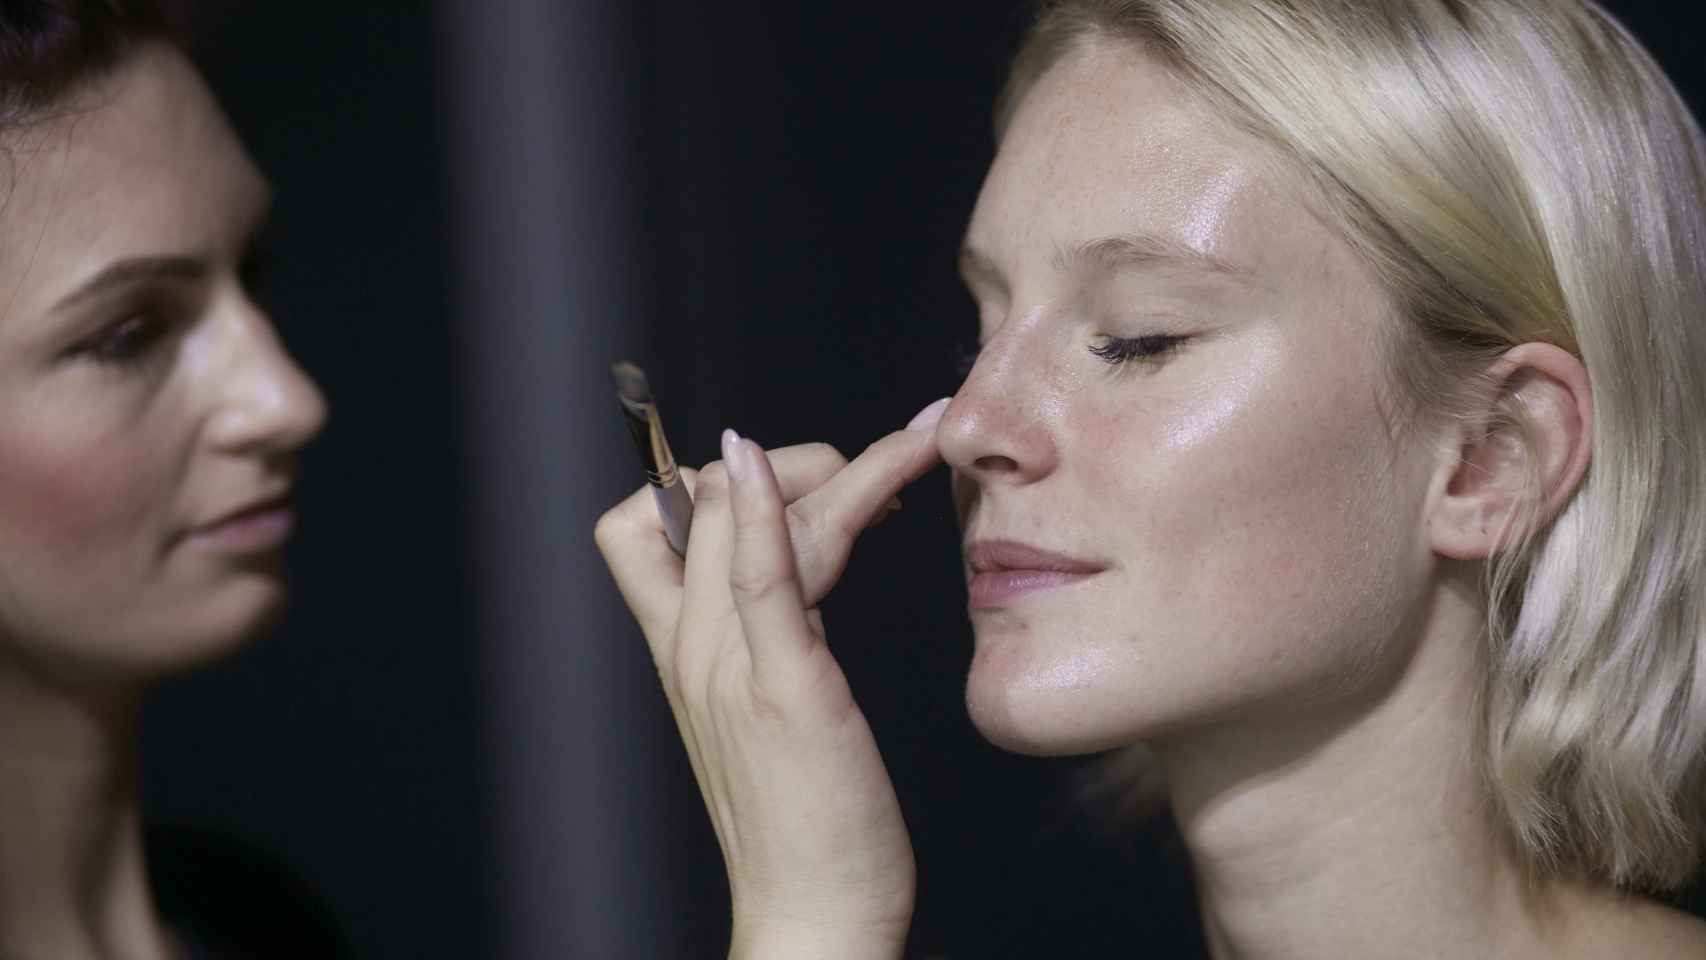 Este maquillaje es una de las apuestas más fuertes de las últimas pasarelas. | Foto: Getty Images.